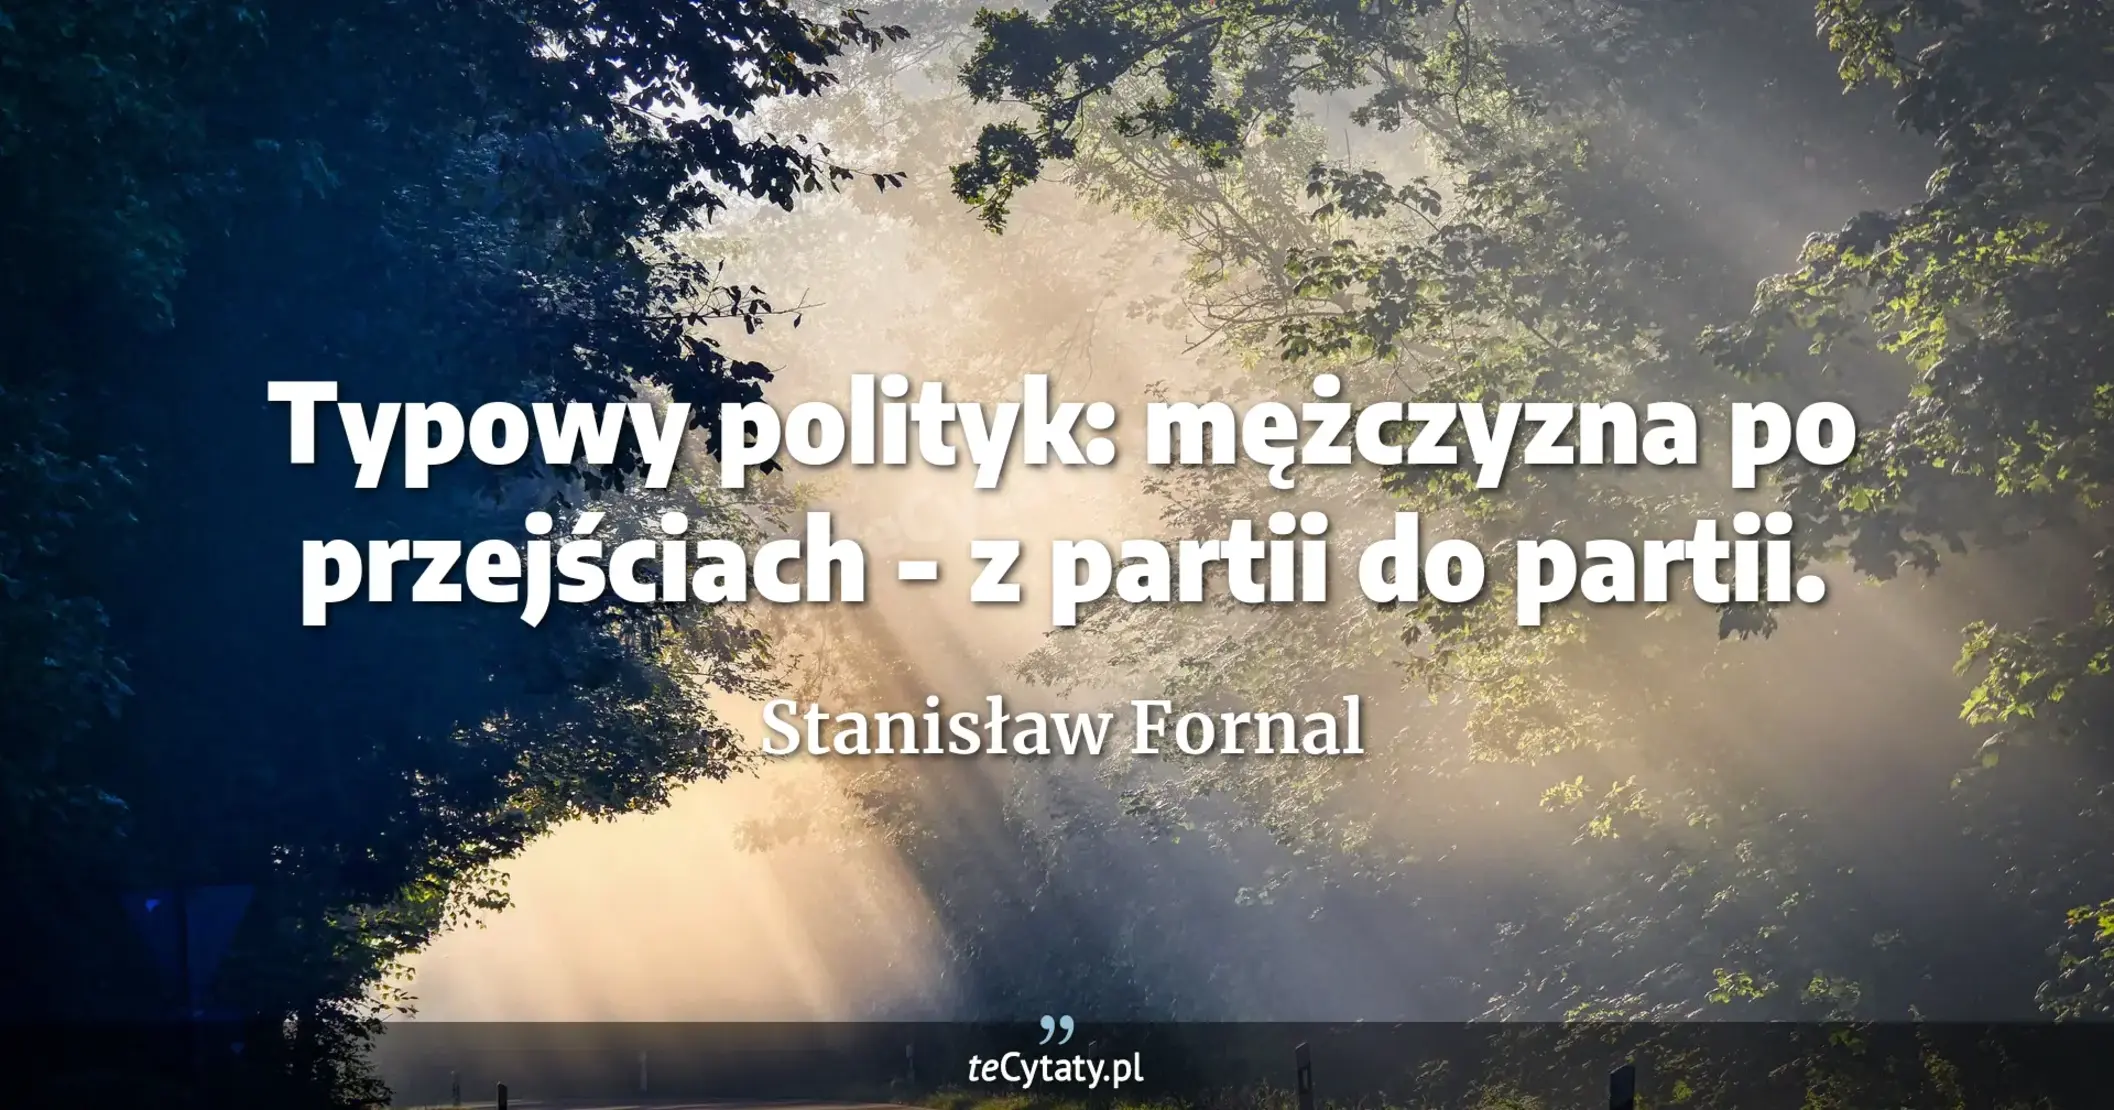 Typowy polityk: mężczyzna po przejściach - z partii do partii. - Stanisław Fornal